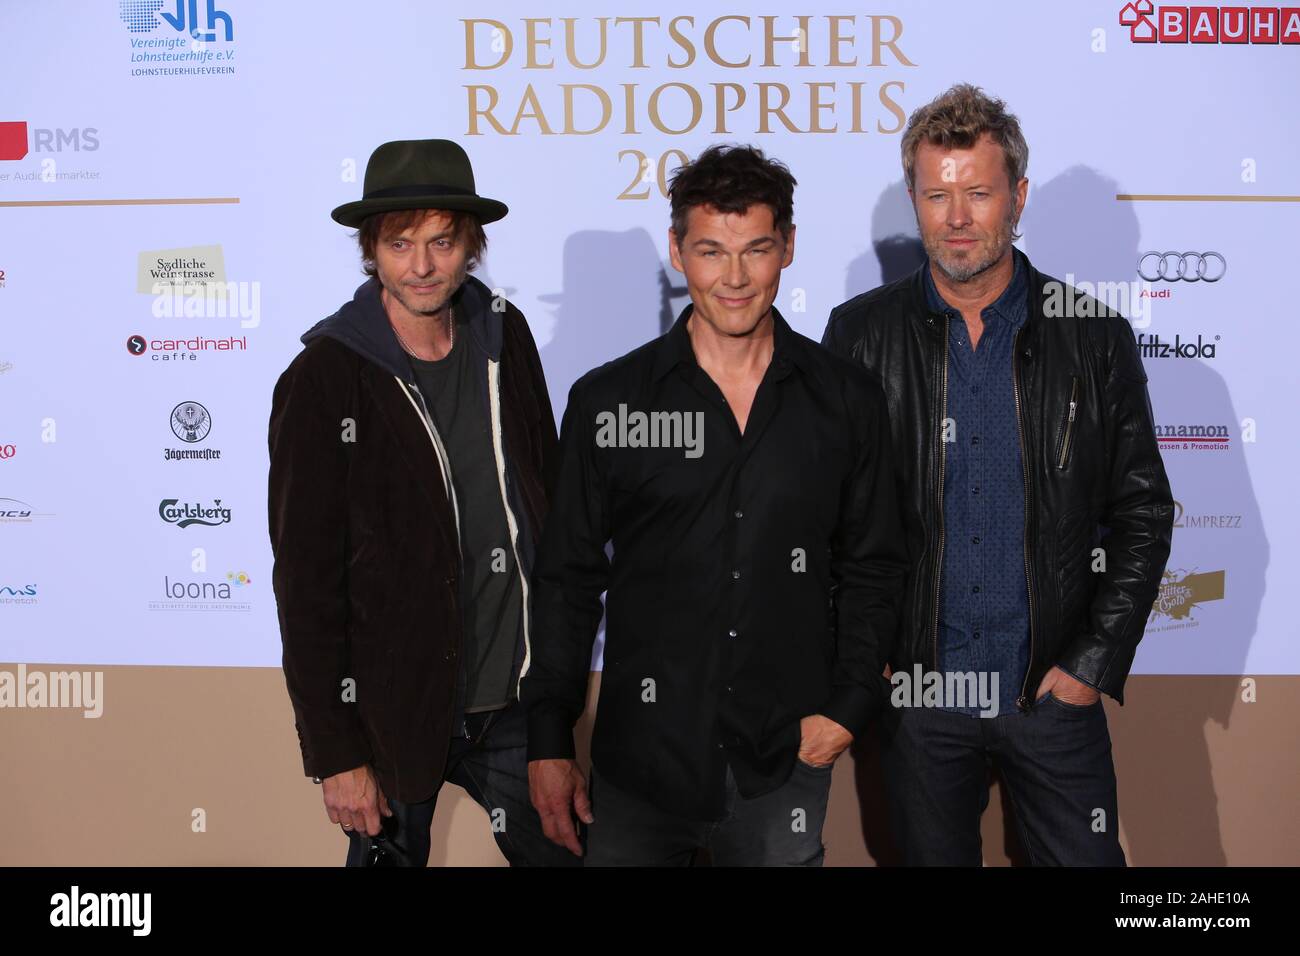 Pal Waaktaar-Savoy, Magne Furuholmen und Morten Harket (a-ha) bei der Verleihung vom Deutschen Radiopreis 2015 im Schuppen 52. Hamburg, 03.09.2015 Stockfoto